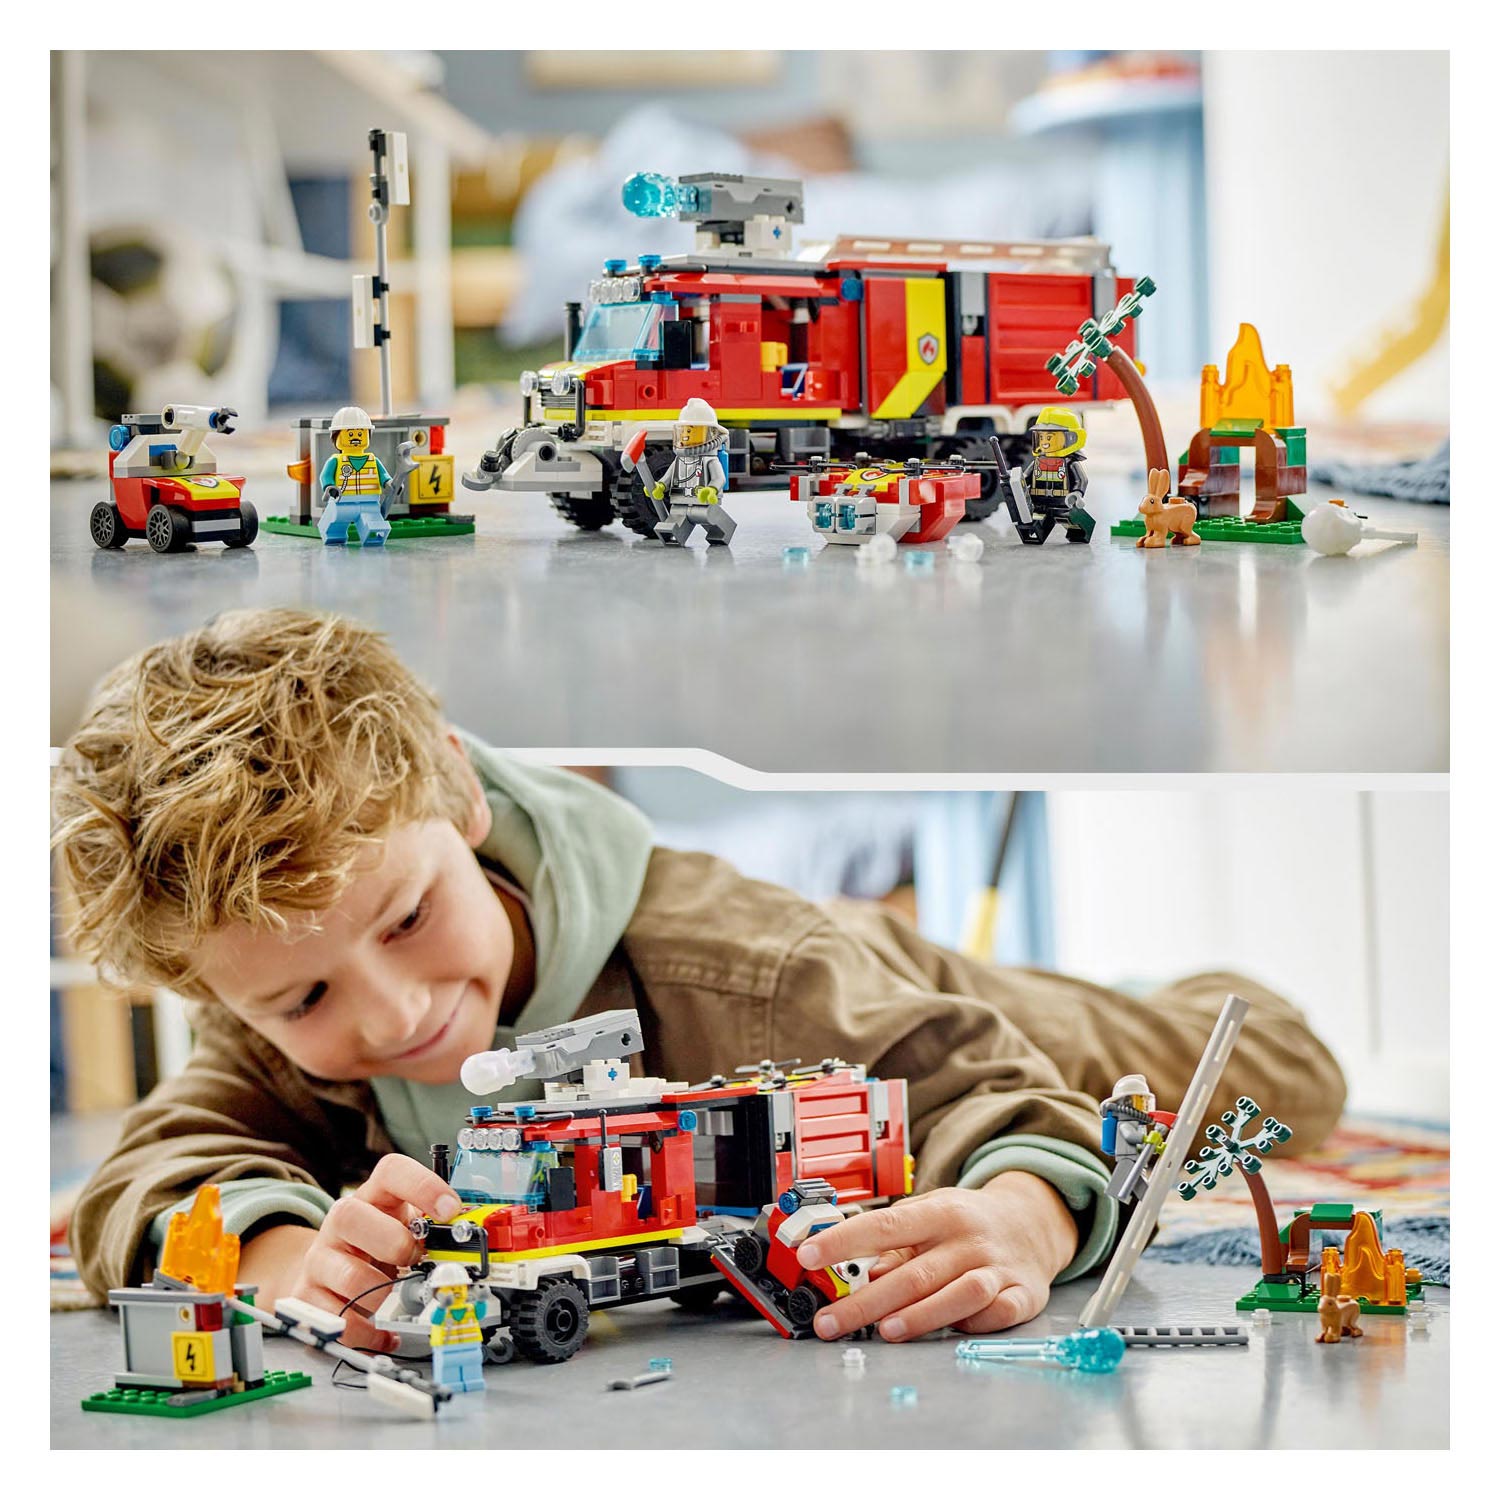 LEGO City 60374 Le camion de pompiers